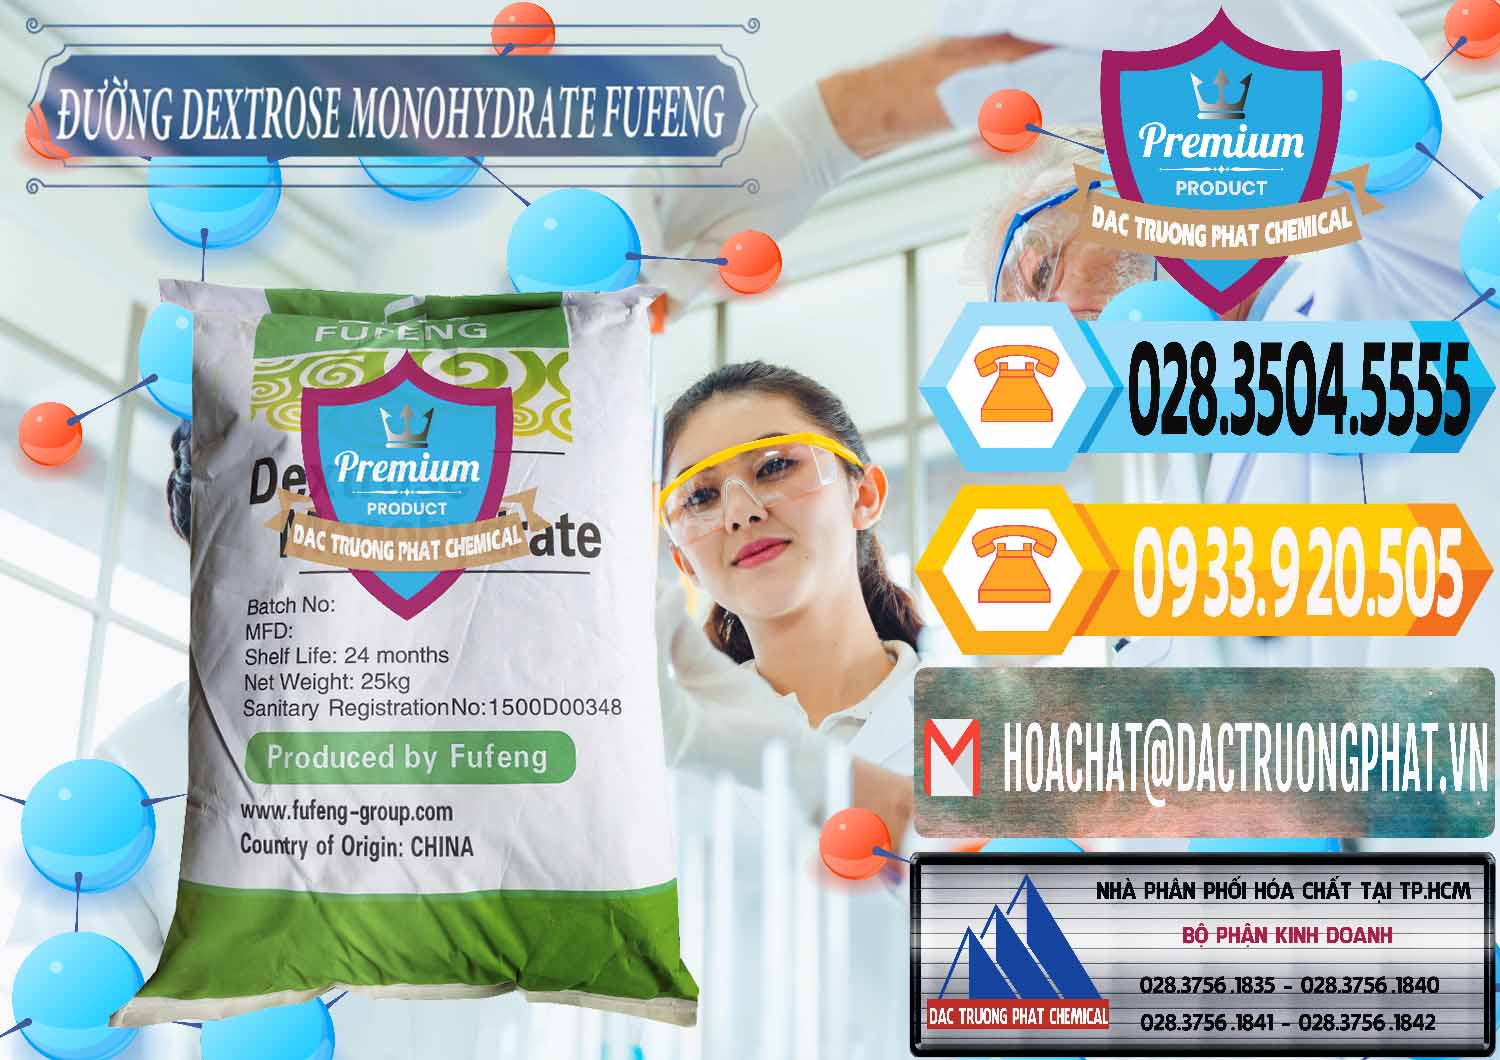 Cty chuyên bán & phân phối Đường Dextrose Monohydrate Food Grade Fufeng Trung Quốc China - 0223 - Chuyên bán _ cung cấp hóa chất tại TP.HCM - hoachattayrua.net